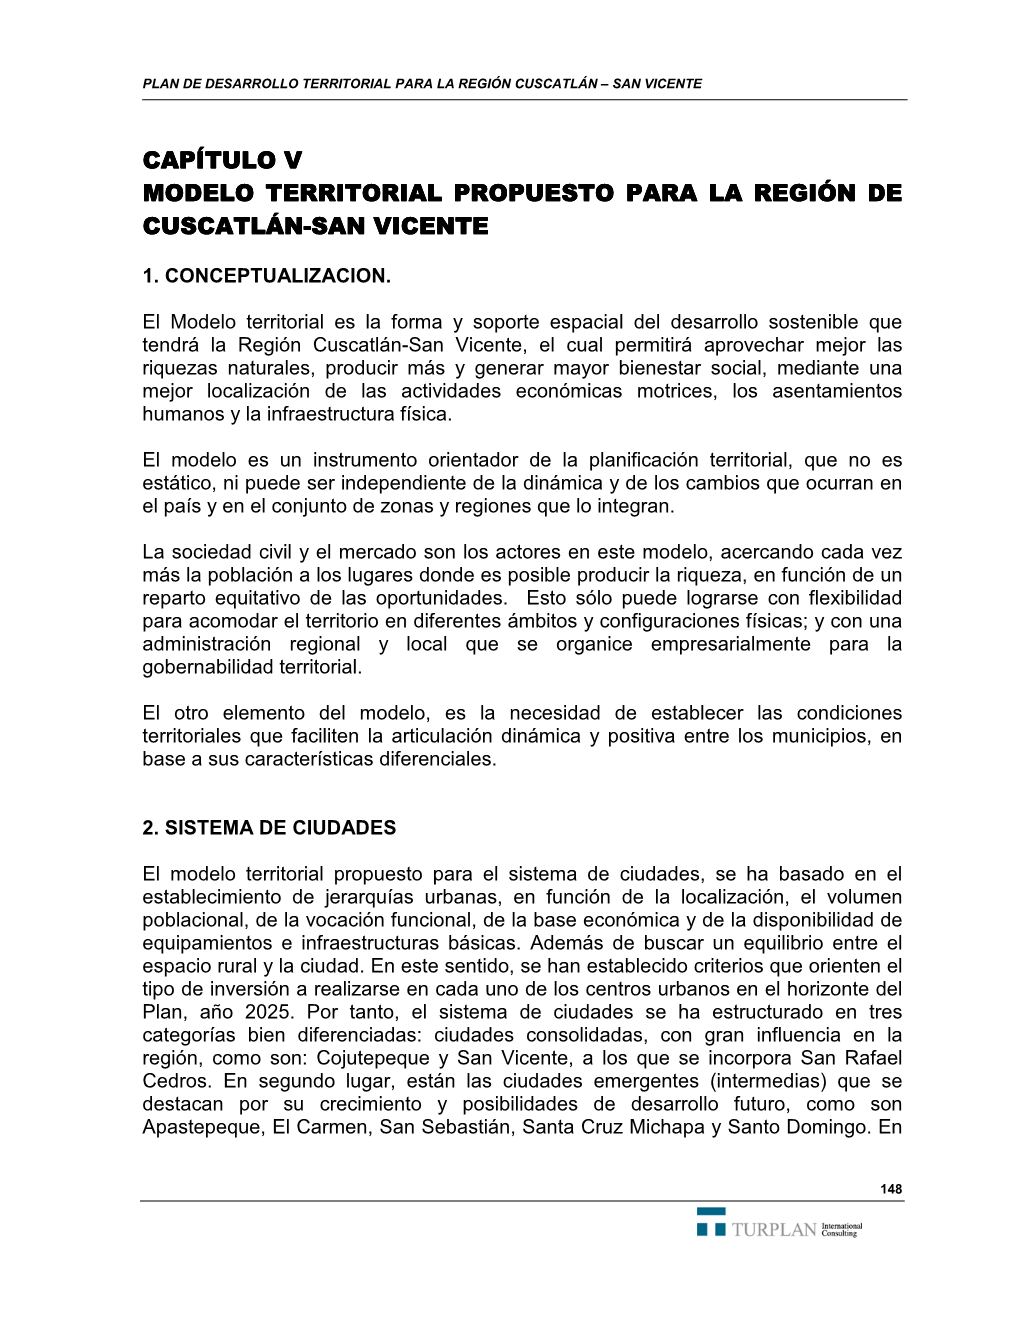 Capítulo V Modelo Territorial Propuesto Para La Región De Cuscatlán